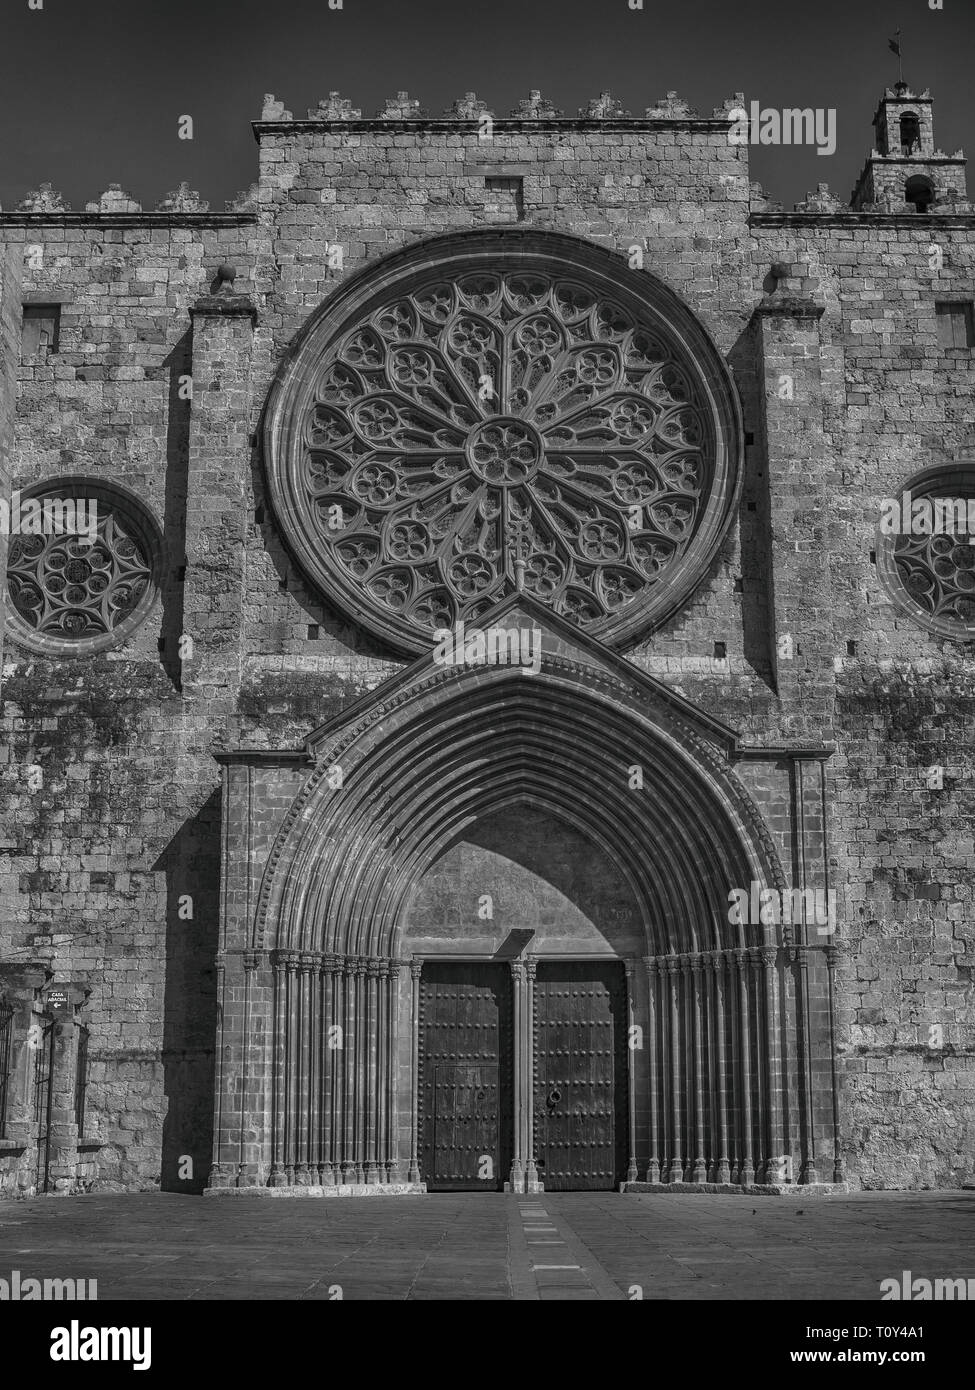 Faсade des Kloster von Sant Cugat - Benediktinerabtei in Sant Cugat del Vallès, Katalonien, Spanien. Stockfoto